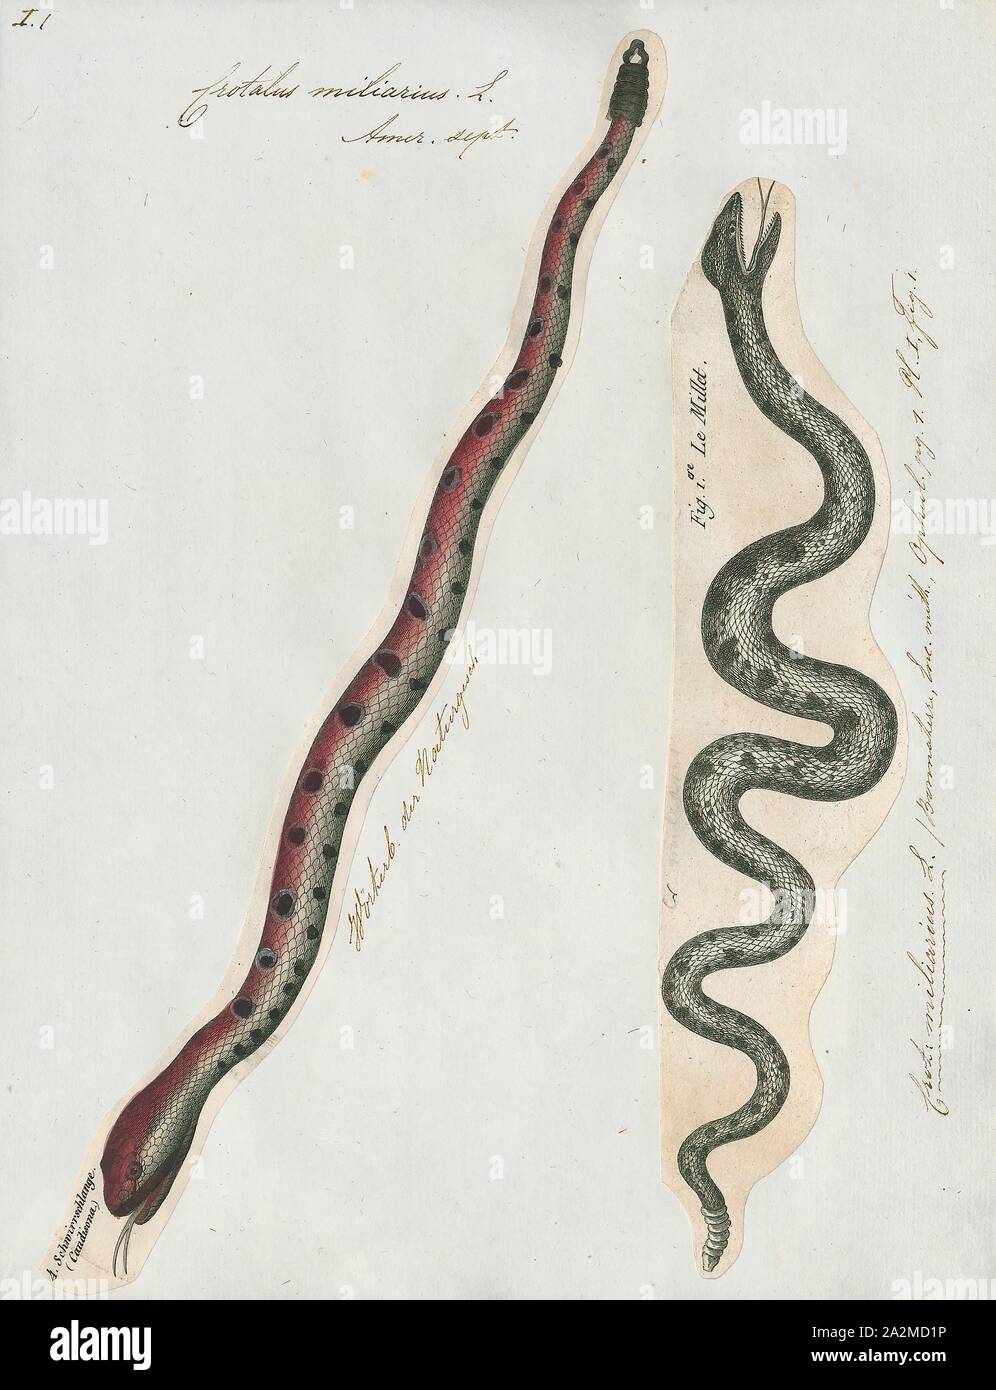 Crotalus miliarius, stampa Sistrurus miliarius, comunemente chiamato rattlesnake pigmeo, è una specie di serpente velenoso nella sottofamiglia Crotalinae (fossa vipere) della famiglia dei Viperidi denominate. La specie è endemica del sud-est degli Stati Uniti. Tre sottospecie sono attualmente riconosciuti, ivi compresa la nomina di sottospecie descritto qui., 1700-1880 Foto Stock